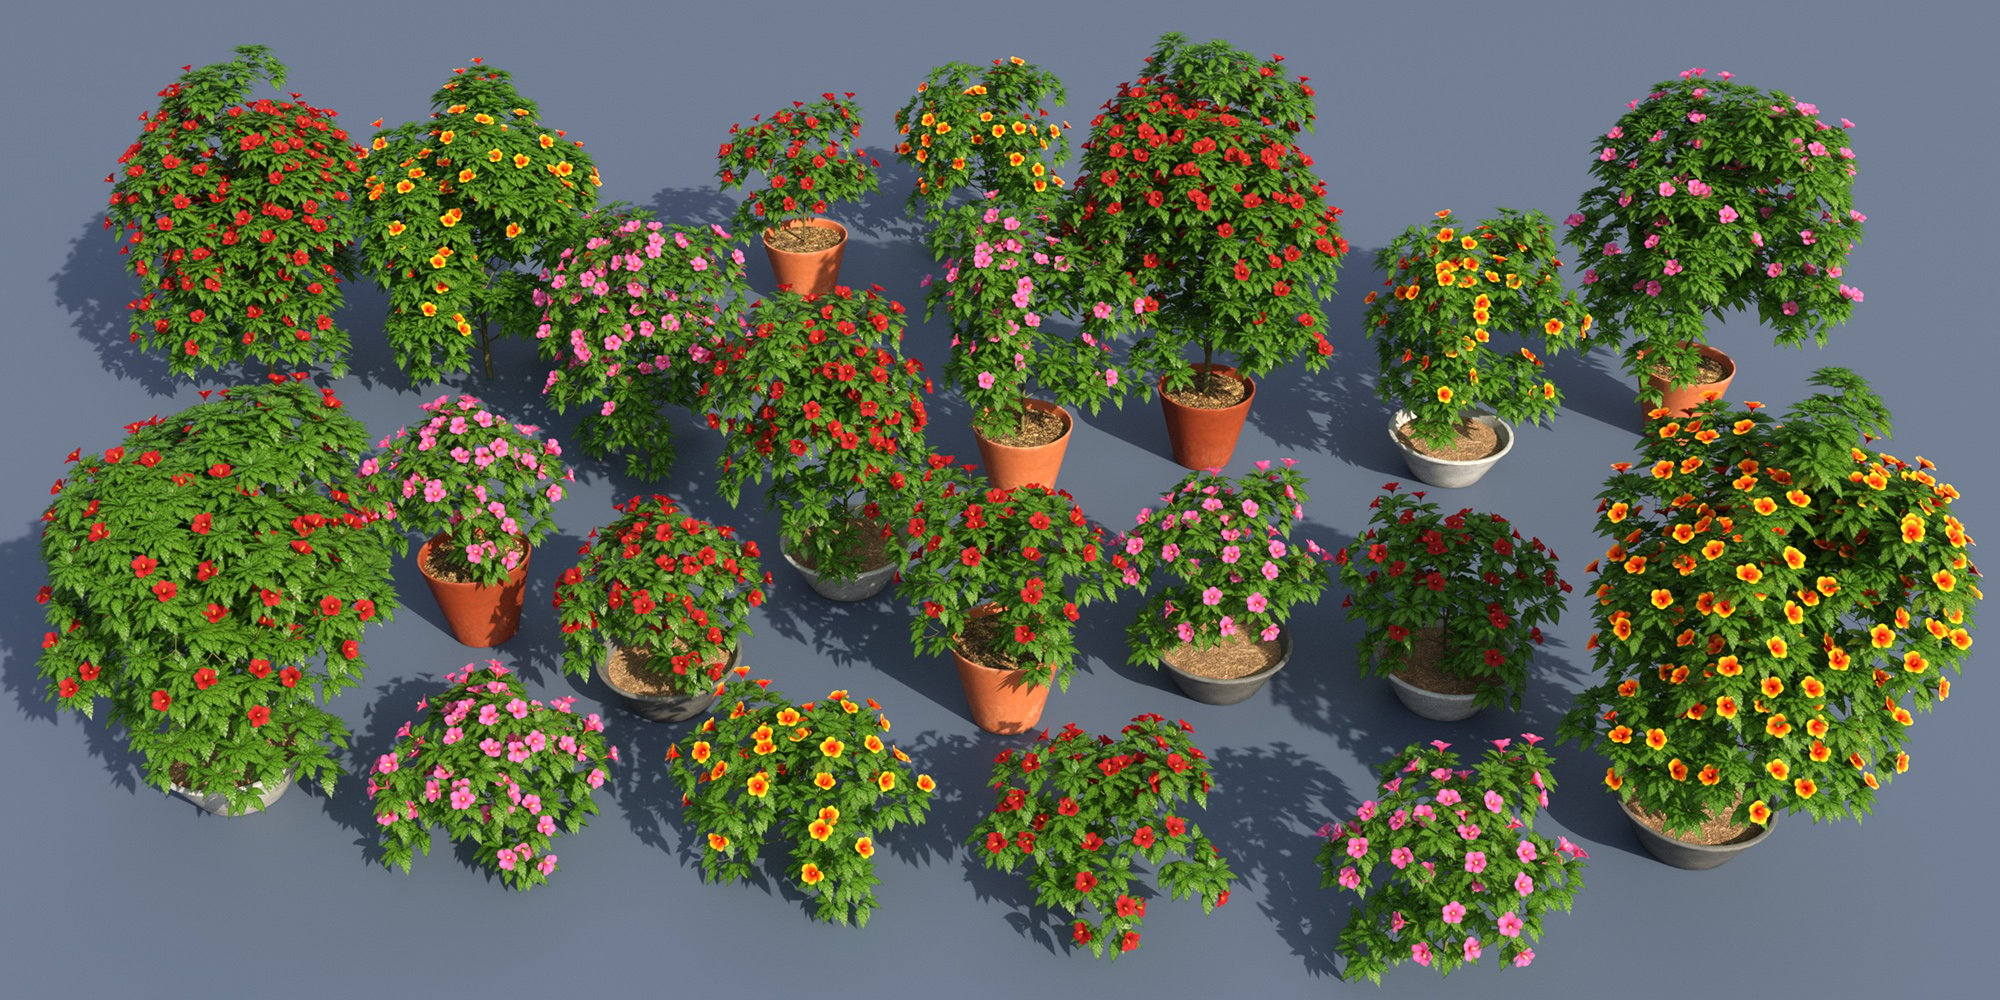 Predatron Hibiscus Plants by: Predatron, 3D Models by Daz 3D